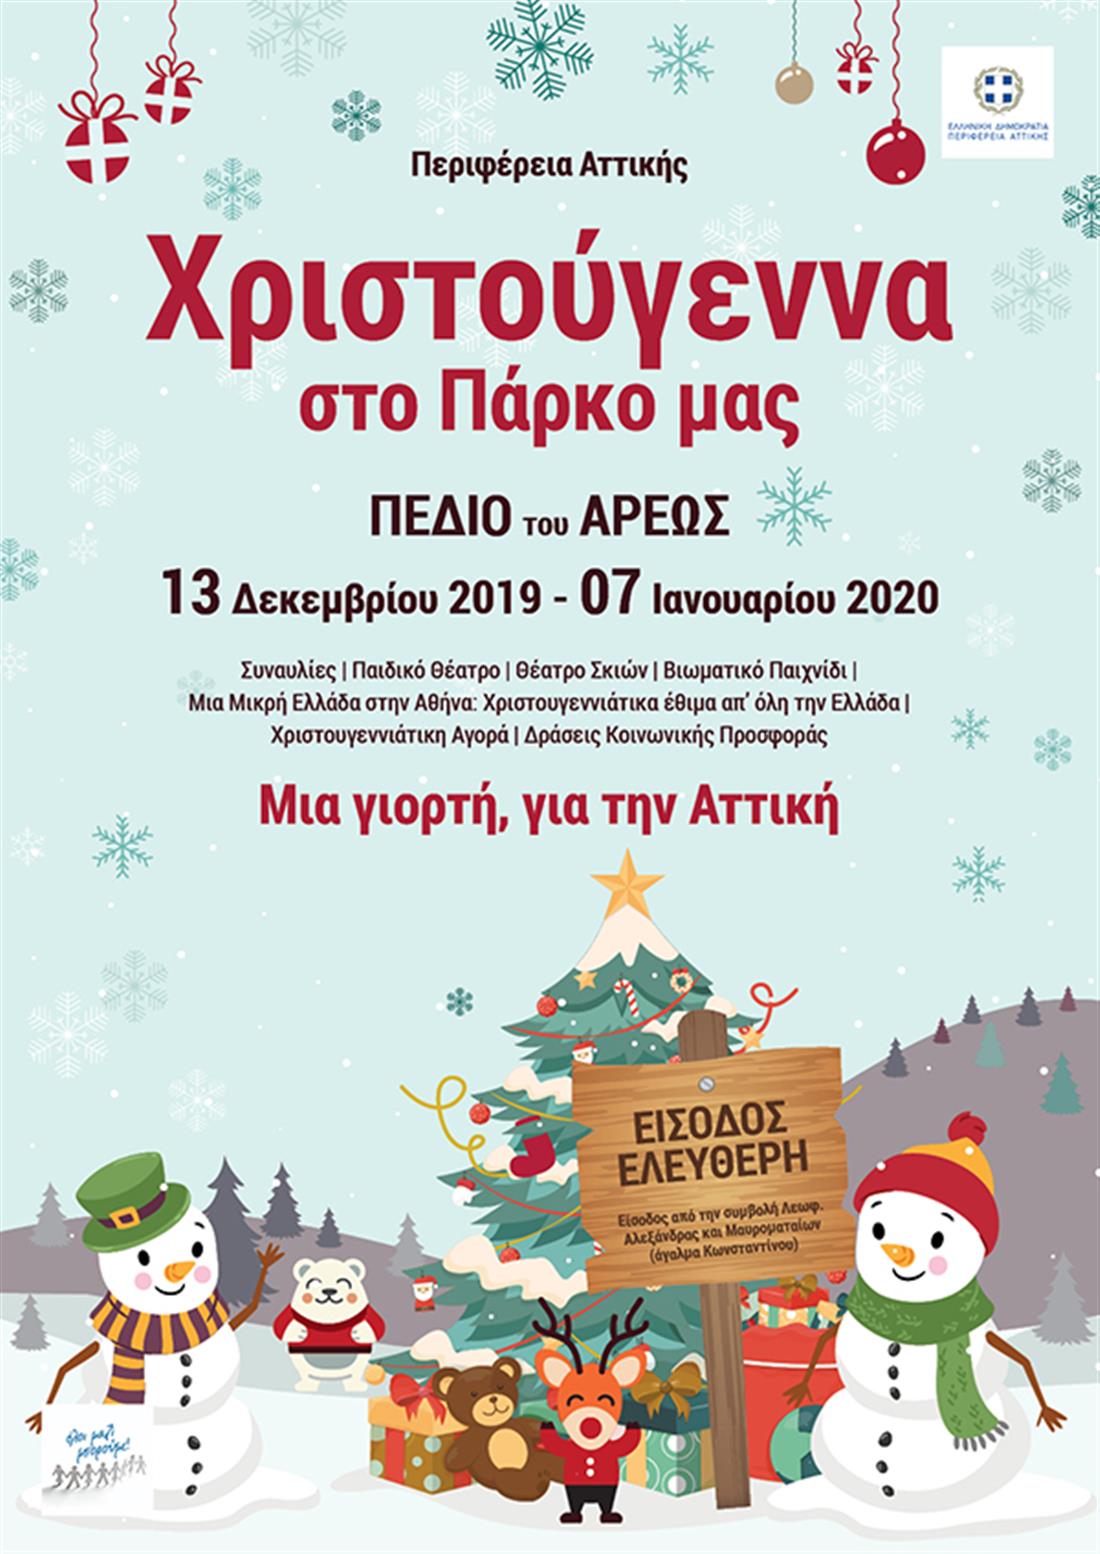 Χριστουγεννιάτικες εκδηλώσεις - Περιφέρεια Αττικής - Πεδίο του Άρεως